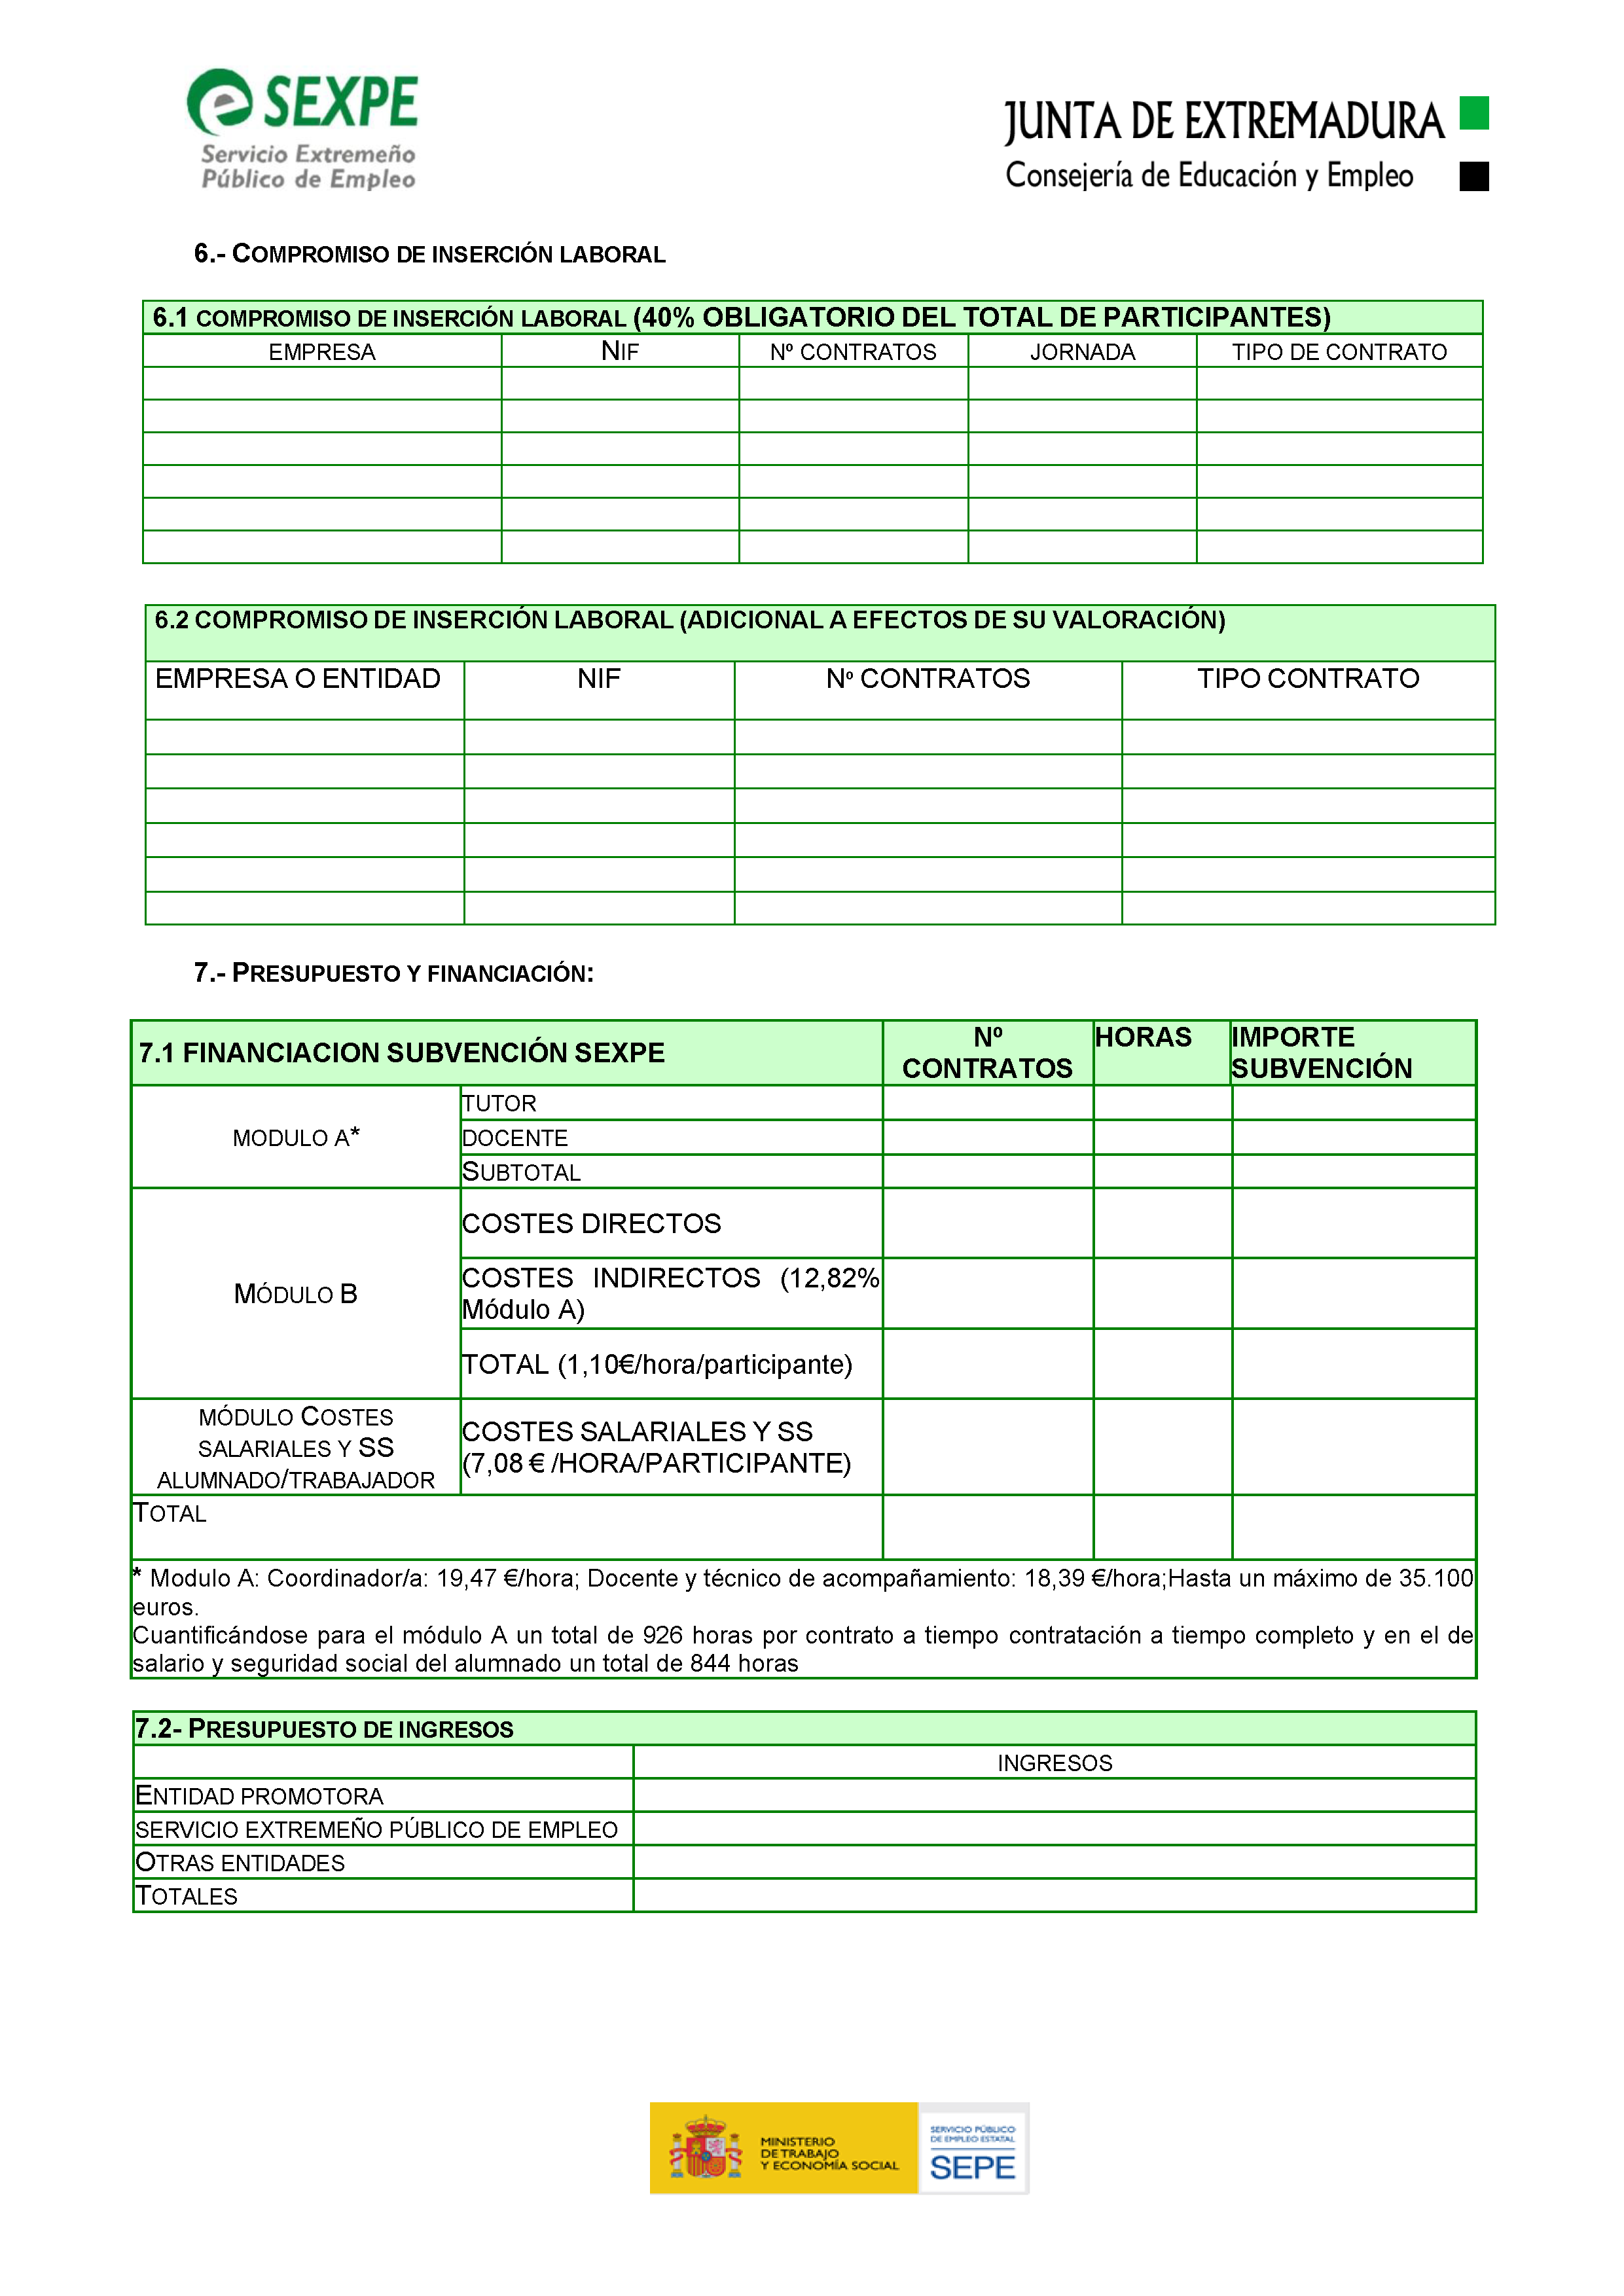 ANEXO I. SOLICITUD APROBACION DE PROYECTOS / SUBVENCIONES Pag 10